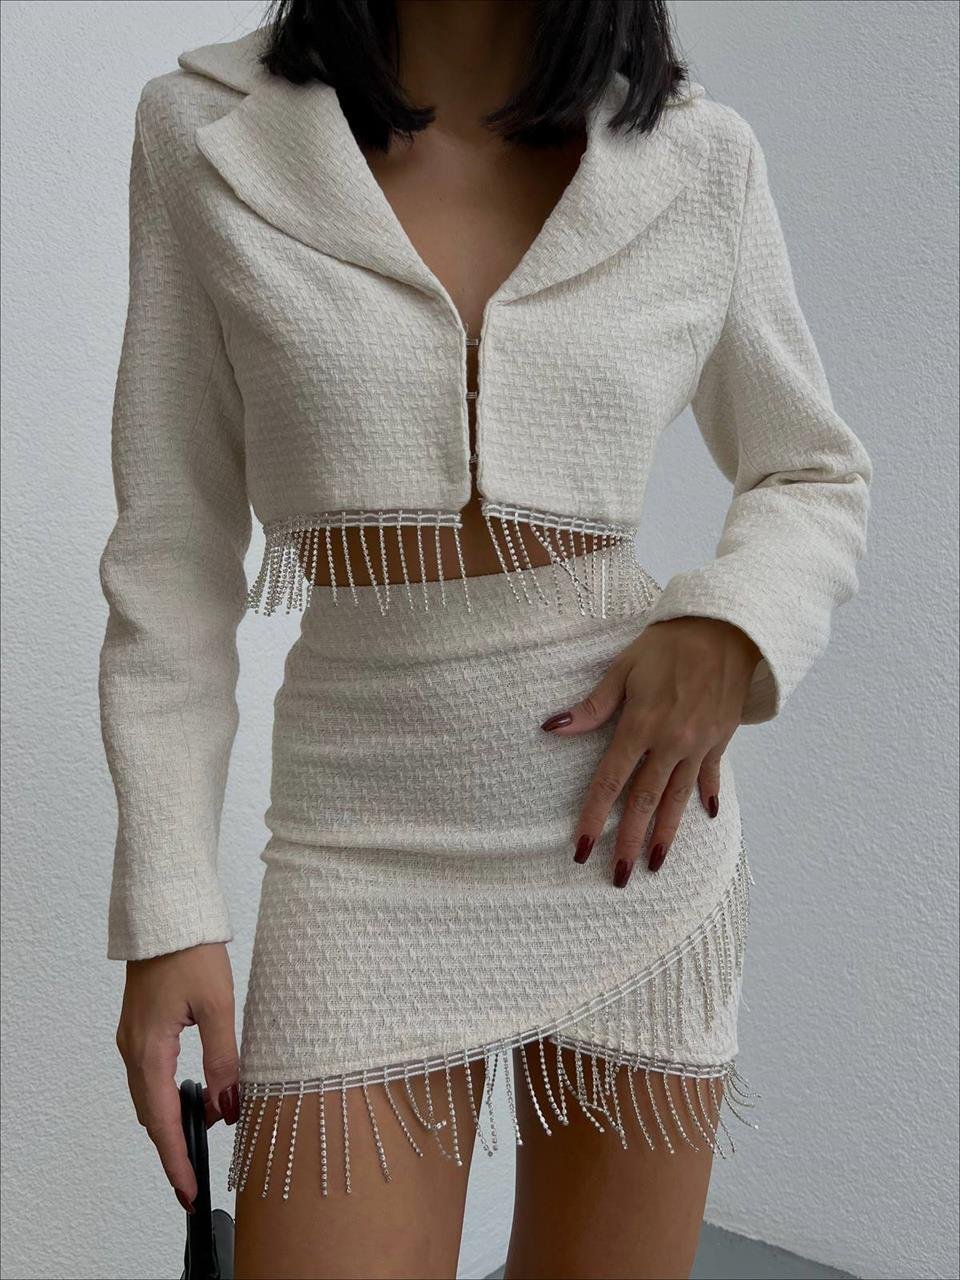 Kadın Chanel Kumaş Zincir Detay Tasarım Etek Ceket Takım Ekru | Ello